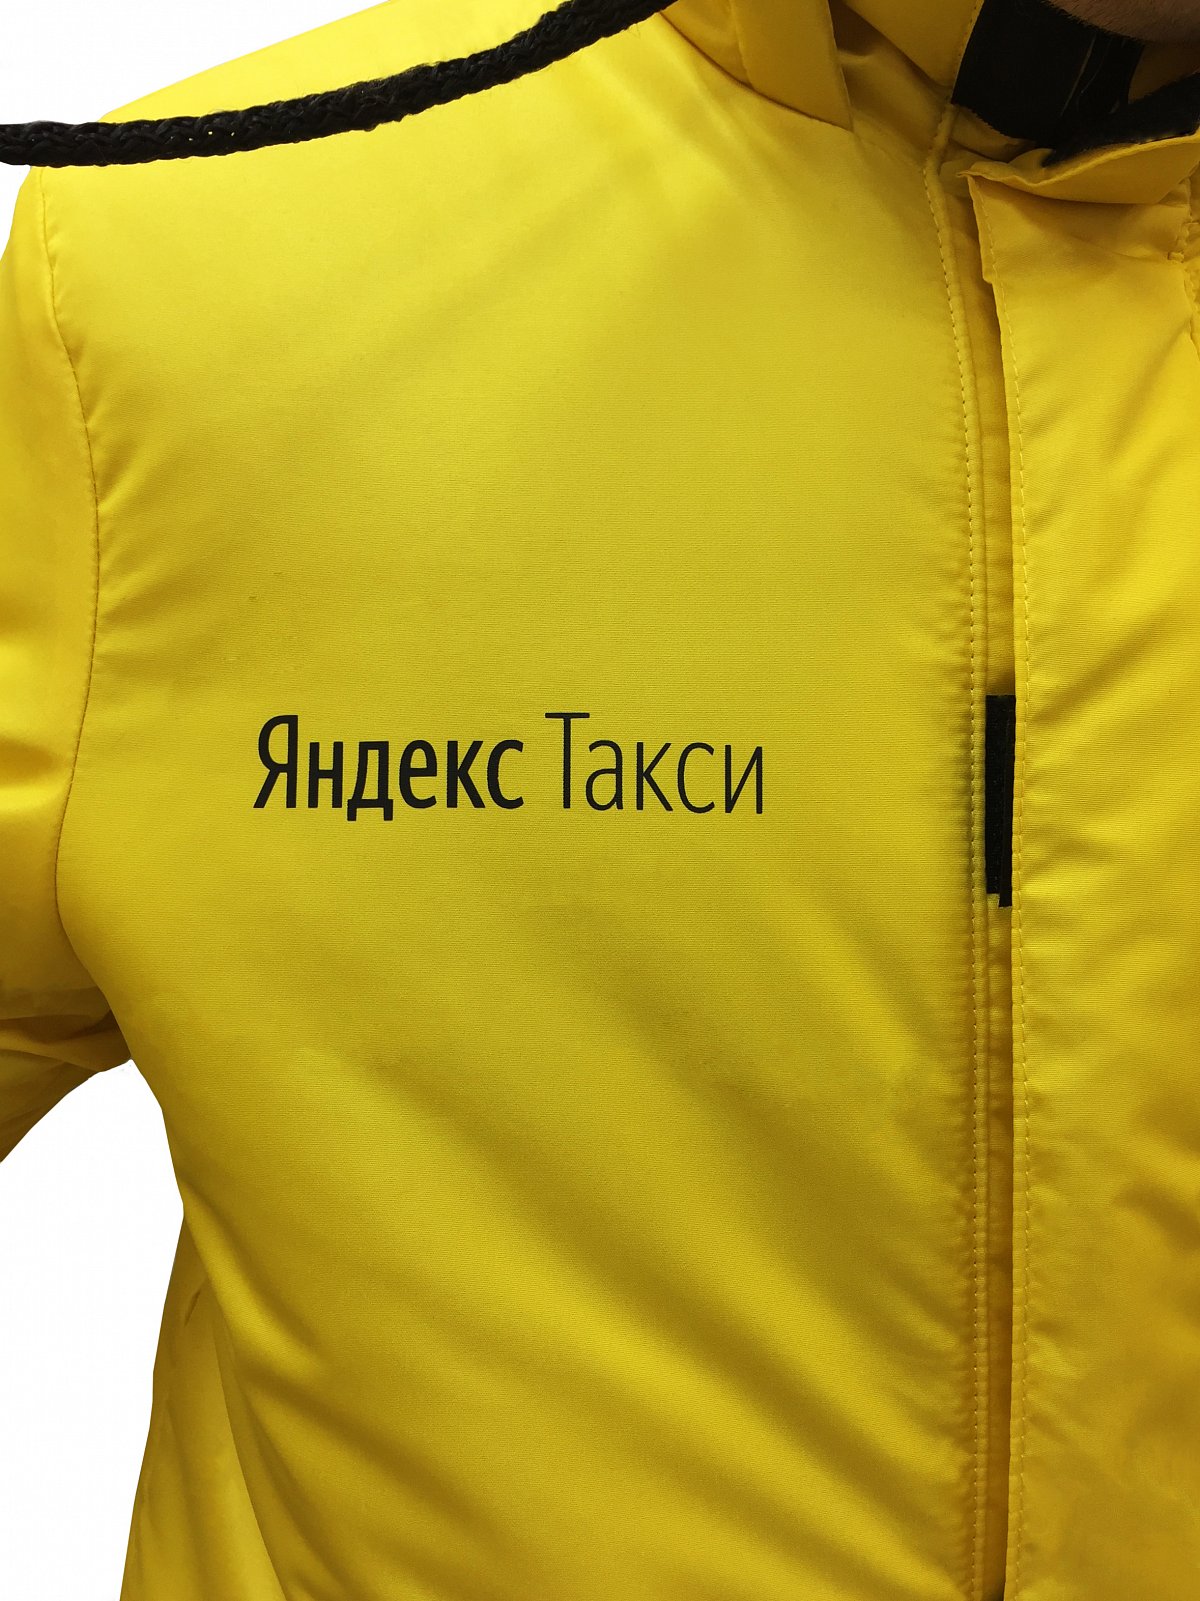 Пошив утепленных курток - пример модели куртка утепленная с нанесением логотипа